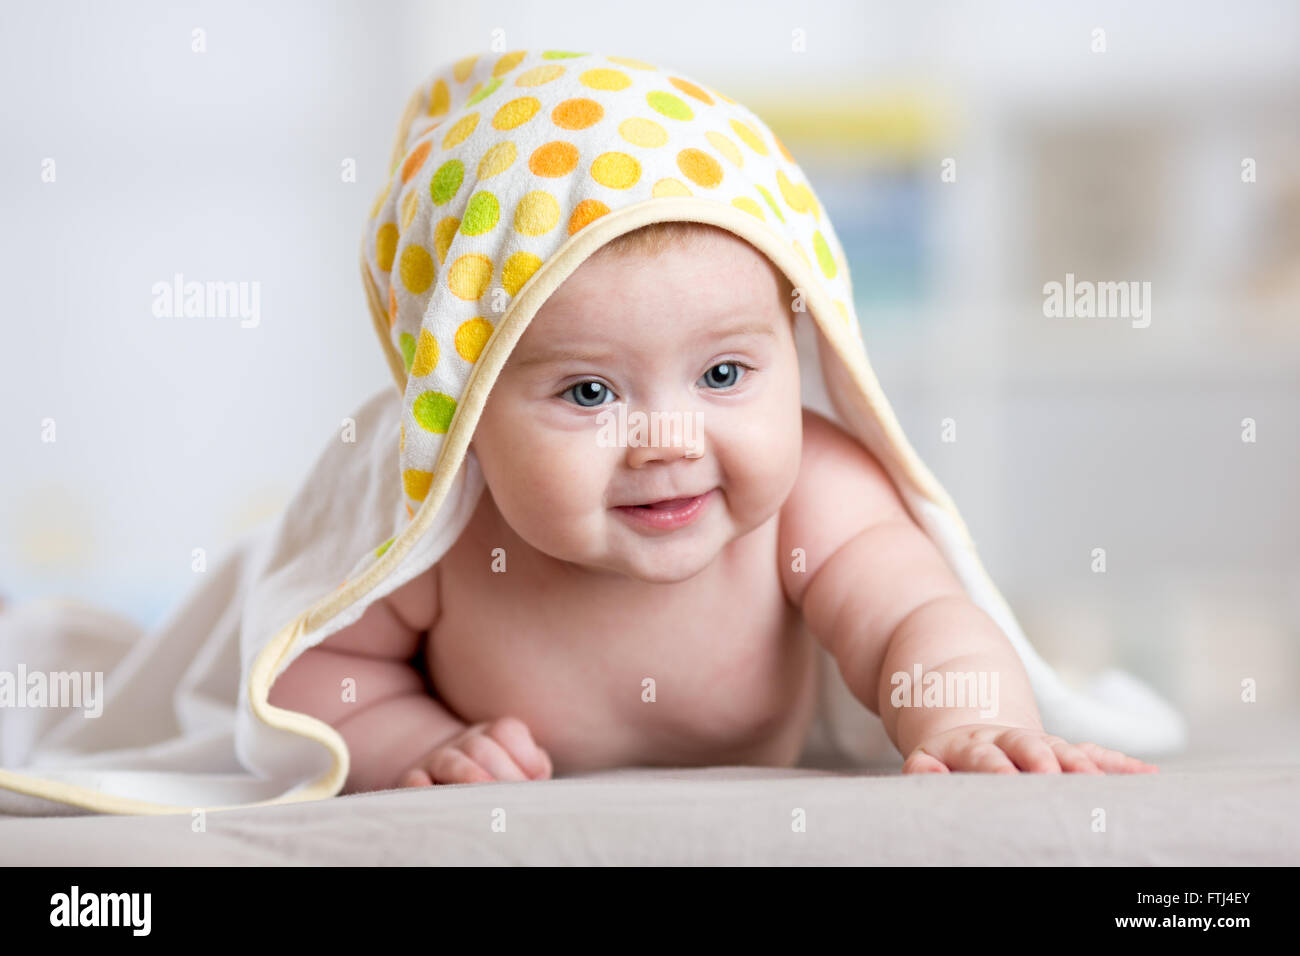 Adorable happy baby in towel indoor Stock Photo